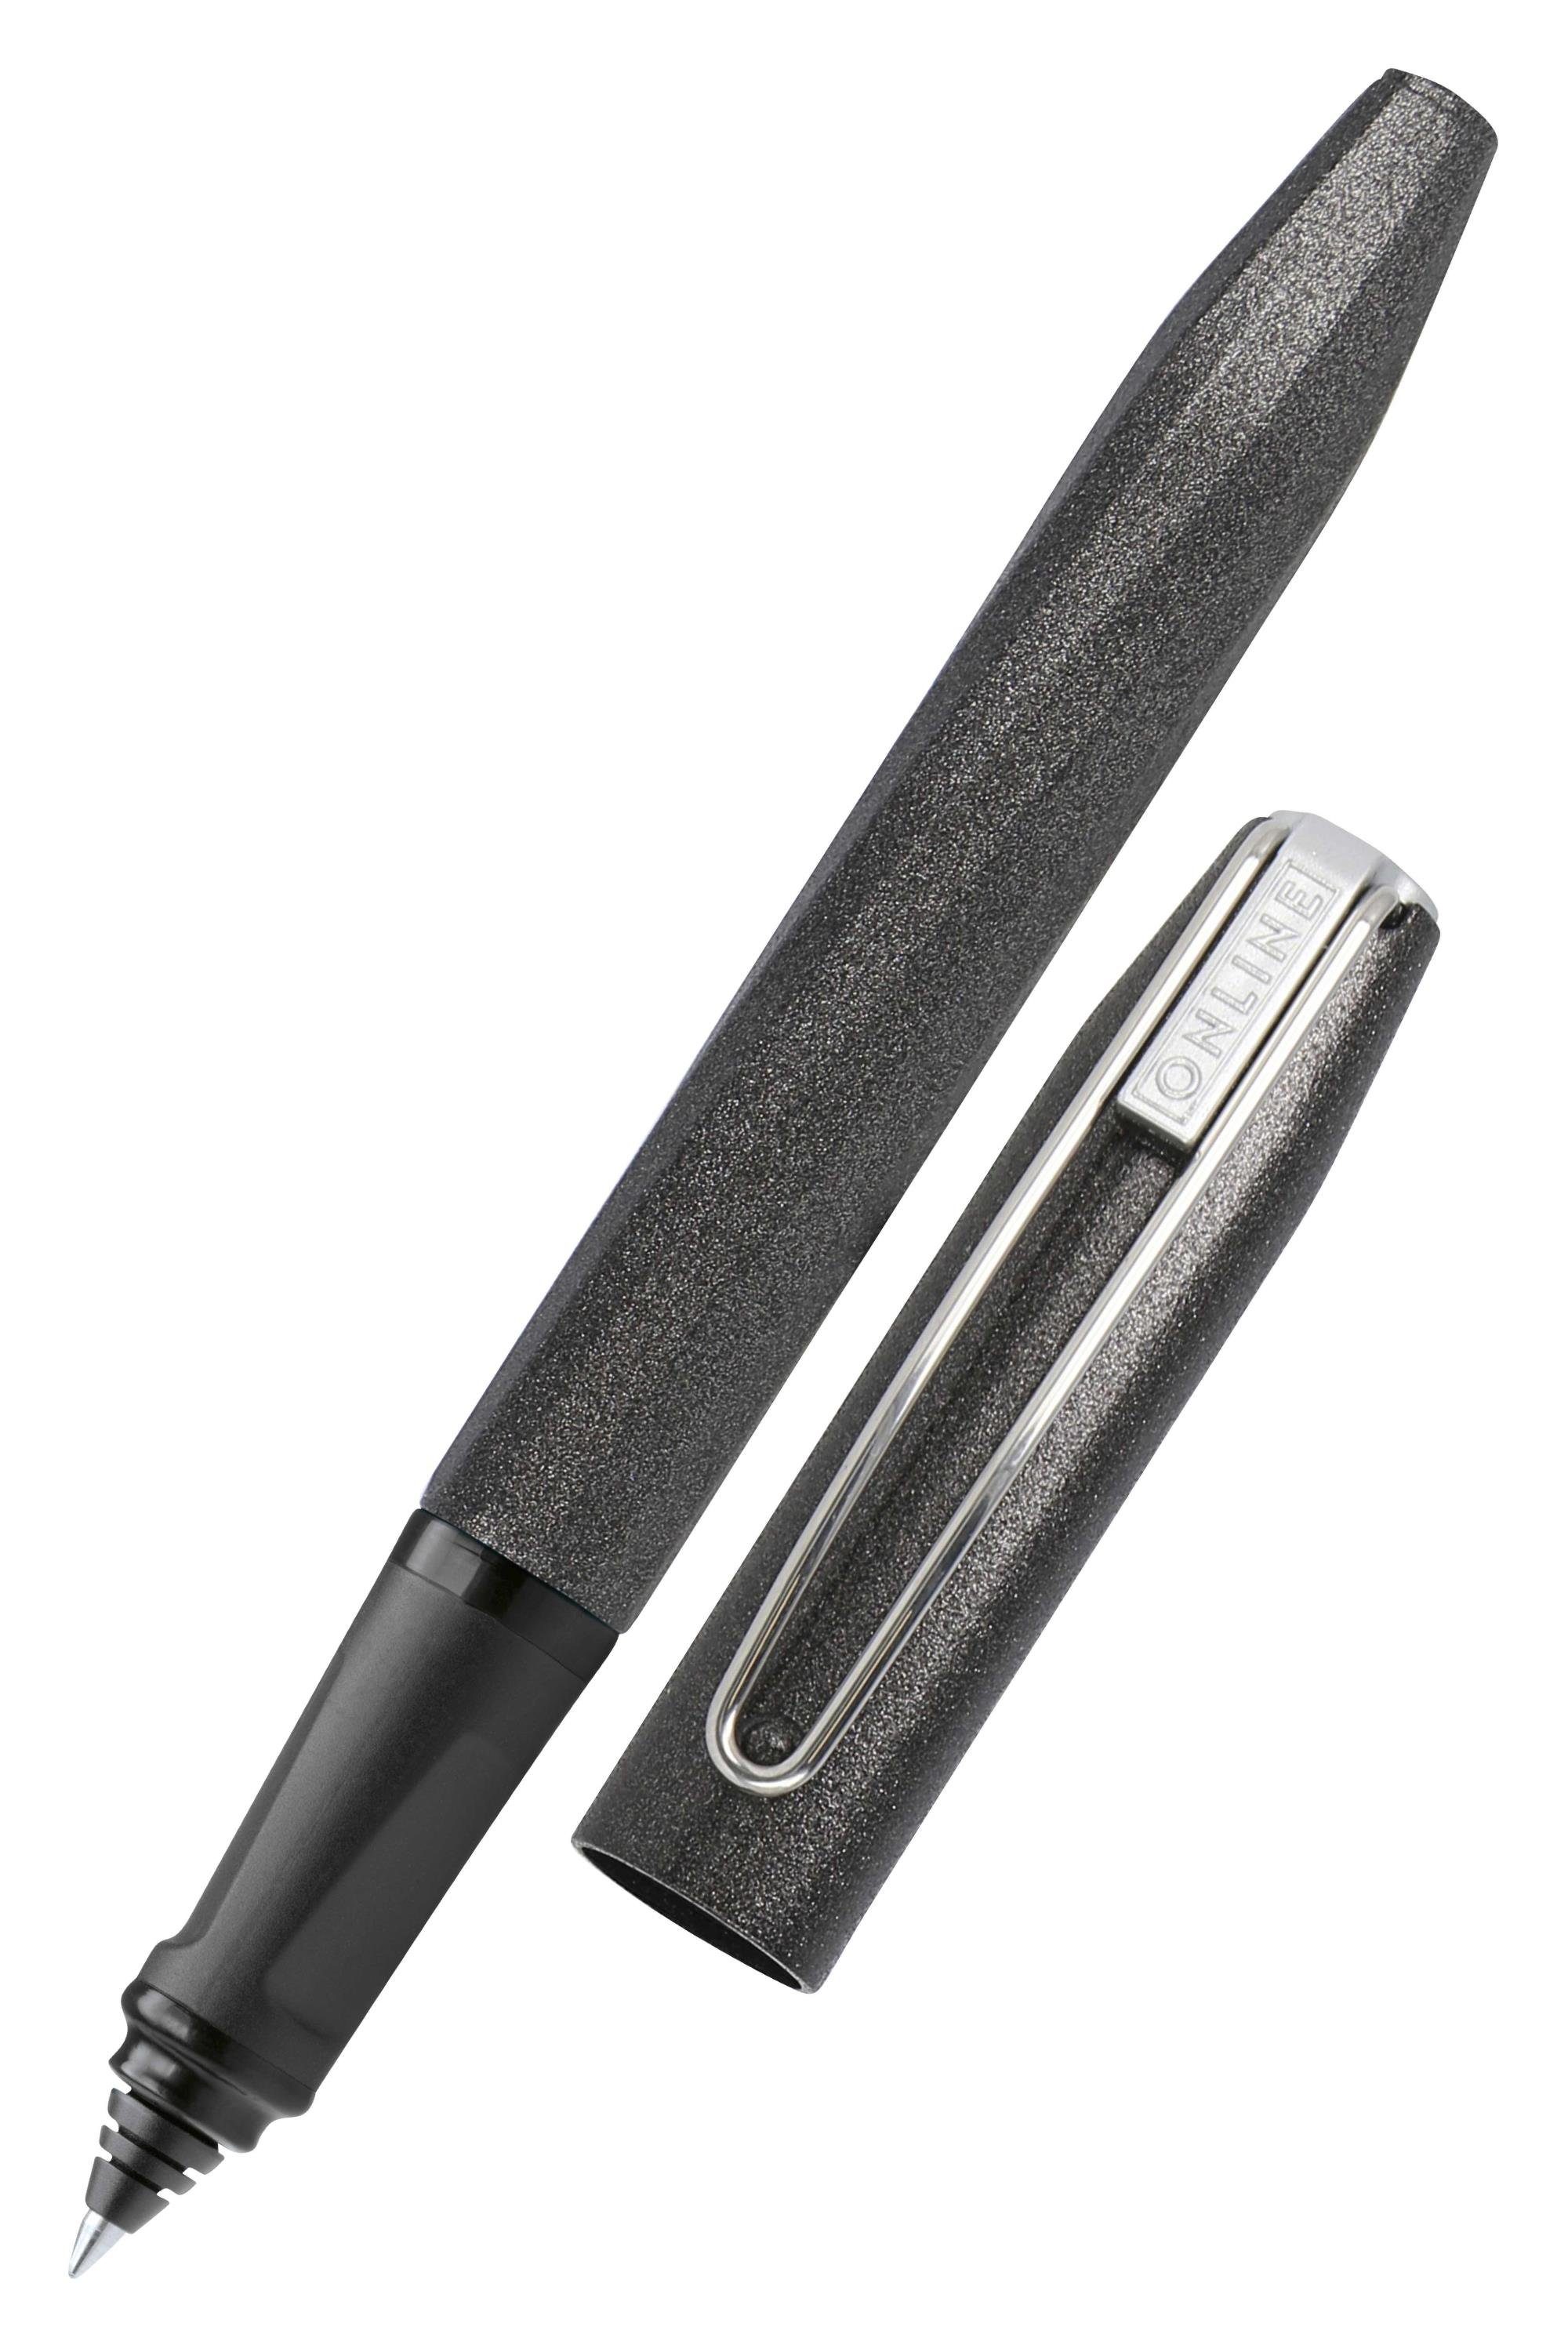 Online Pen Tintenroller Slope, ergonomisch, ideal für die Schule, inkl.  Tintenpatrone